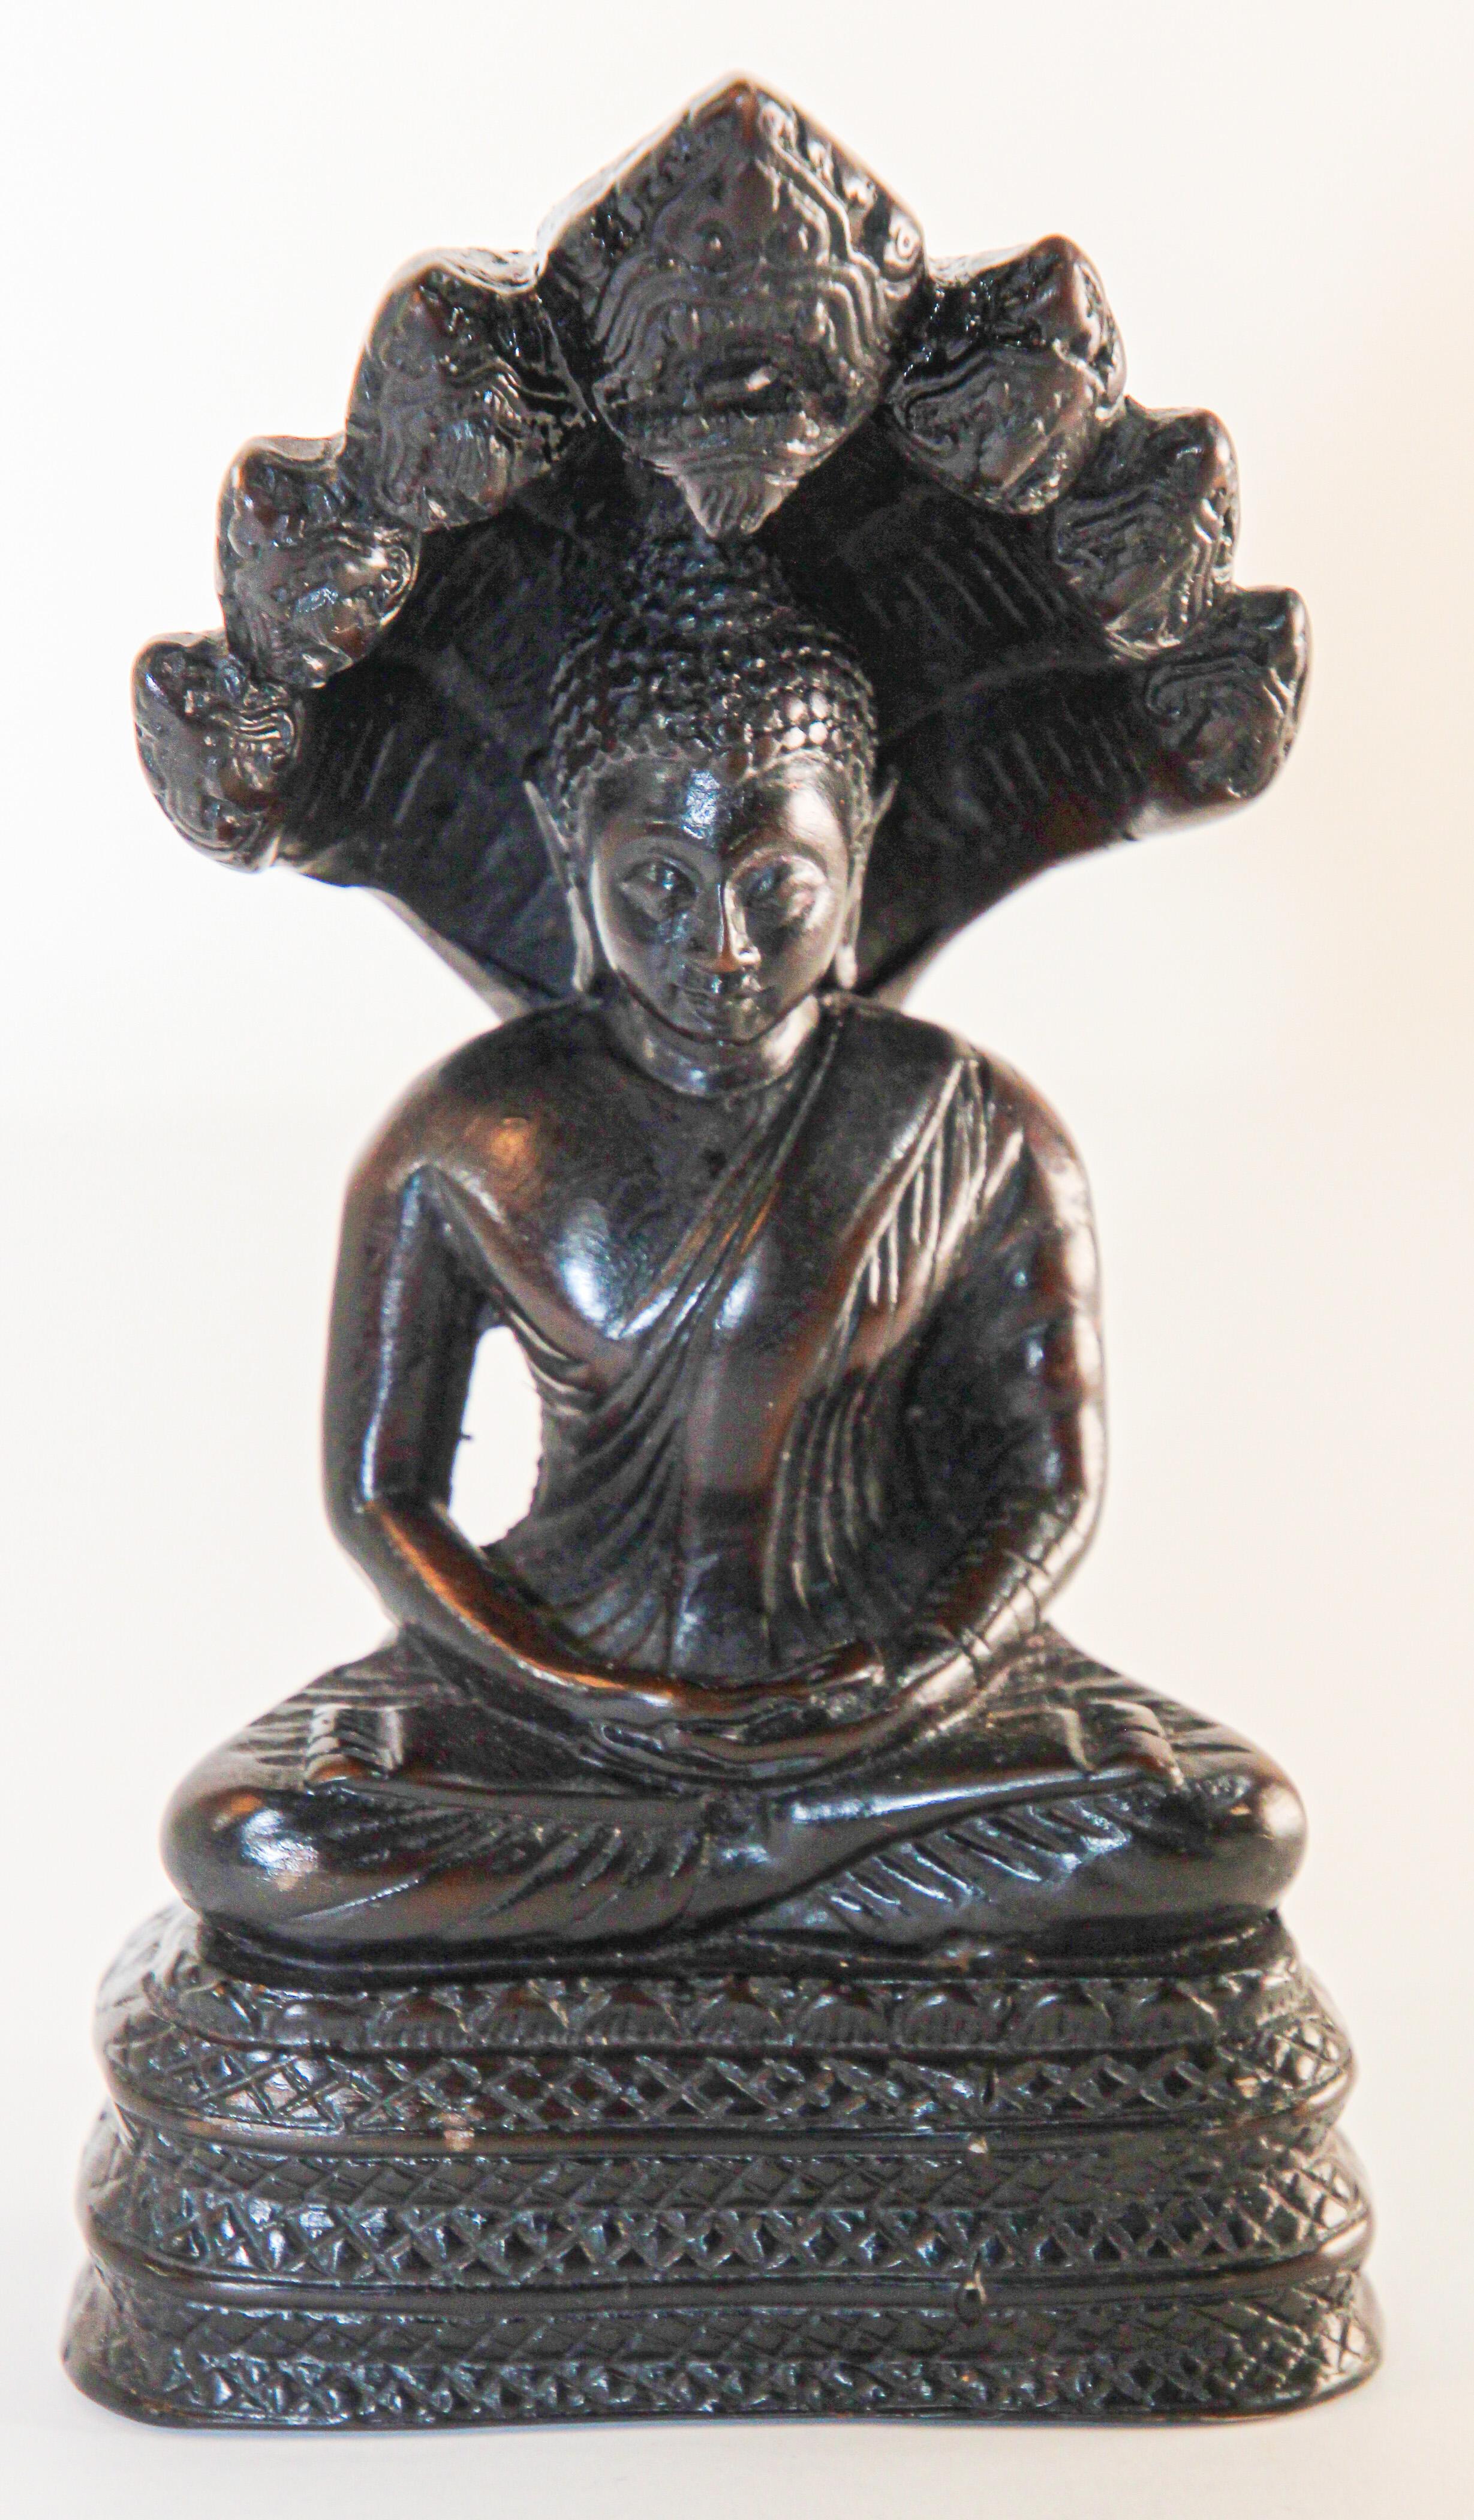 Vintage Naga Meditierende Buddha-Statue.
Im Buddhismus und Hinduismus ist Naga das Sanskrit-Wort für eine Gottheit, die die Form einer sehr großen Schlange annimmt, insbesondere der Königskobra mit mehreren Köpfen.
Vintage Mitte des Jahrhunderts